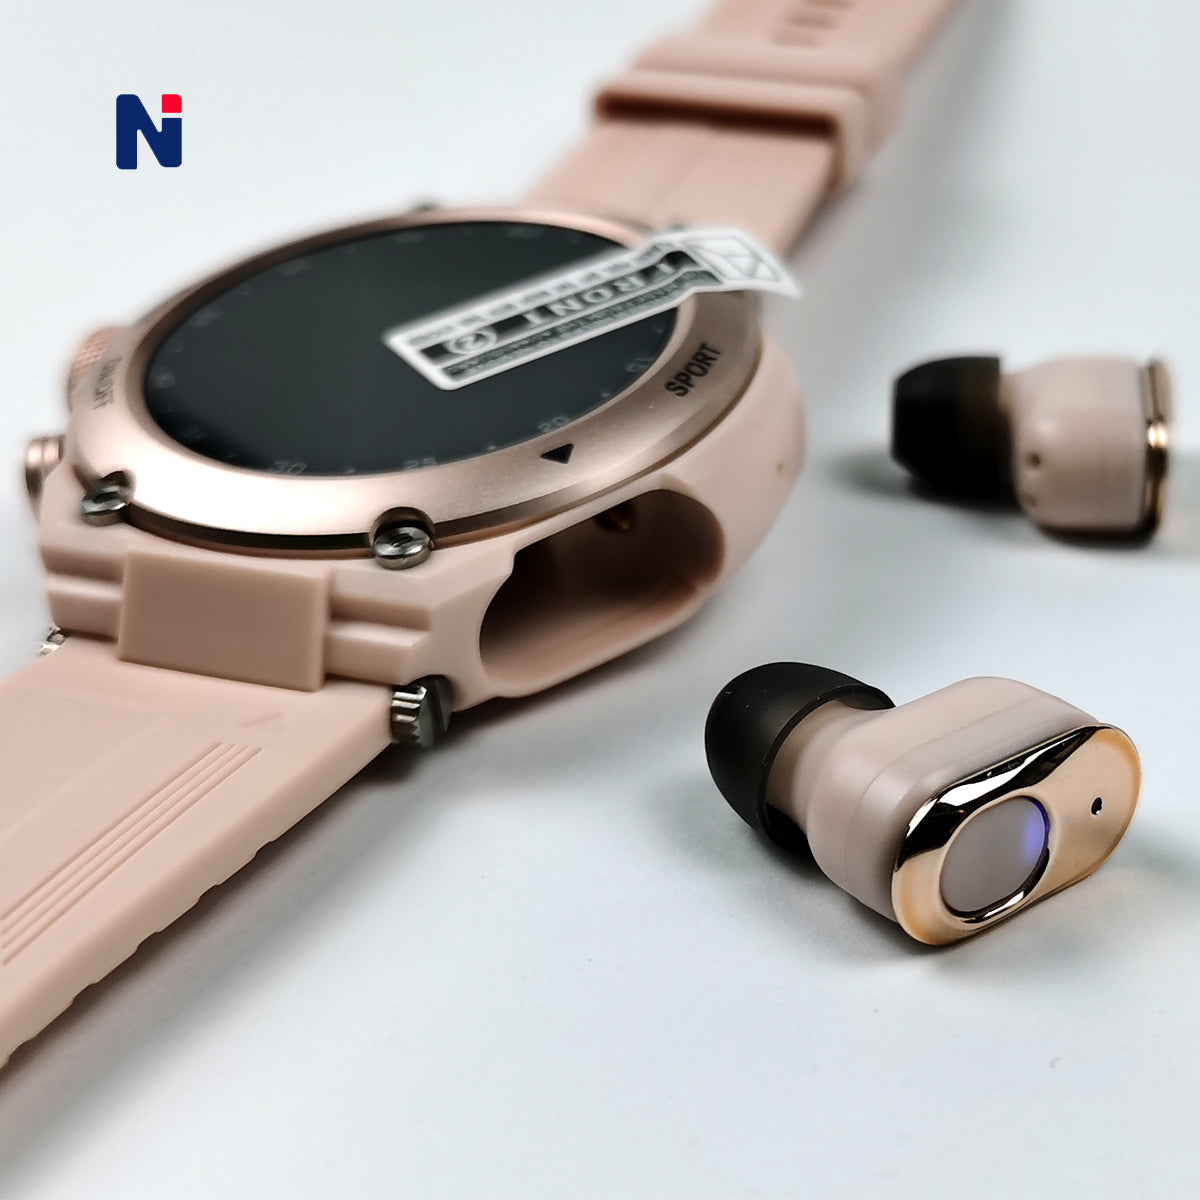 Designer Smart Watch With Wireless Earphone 2 in 1